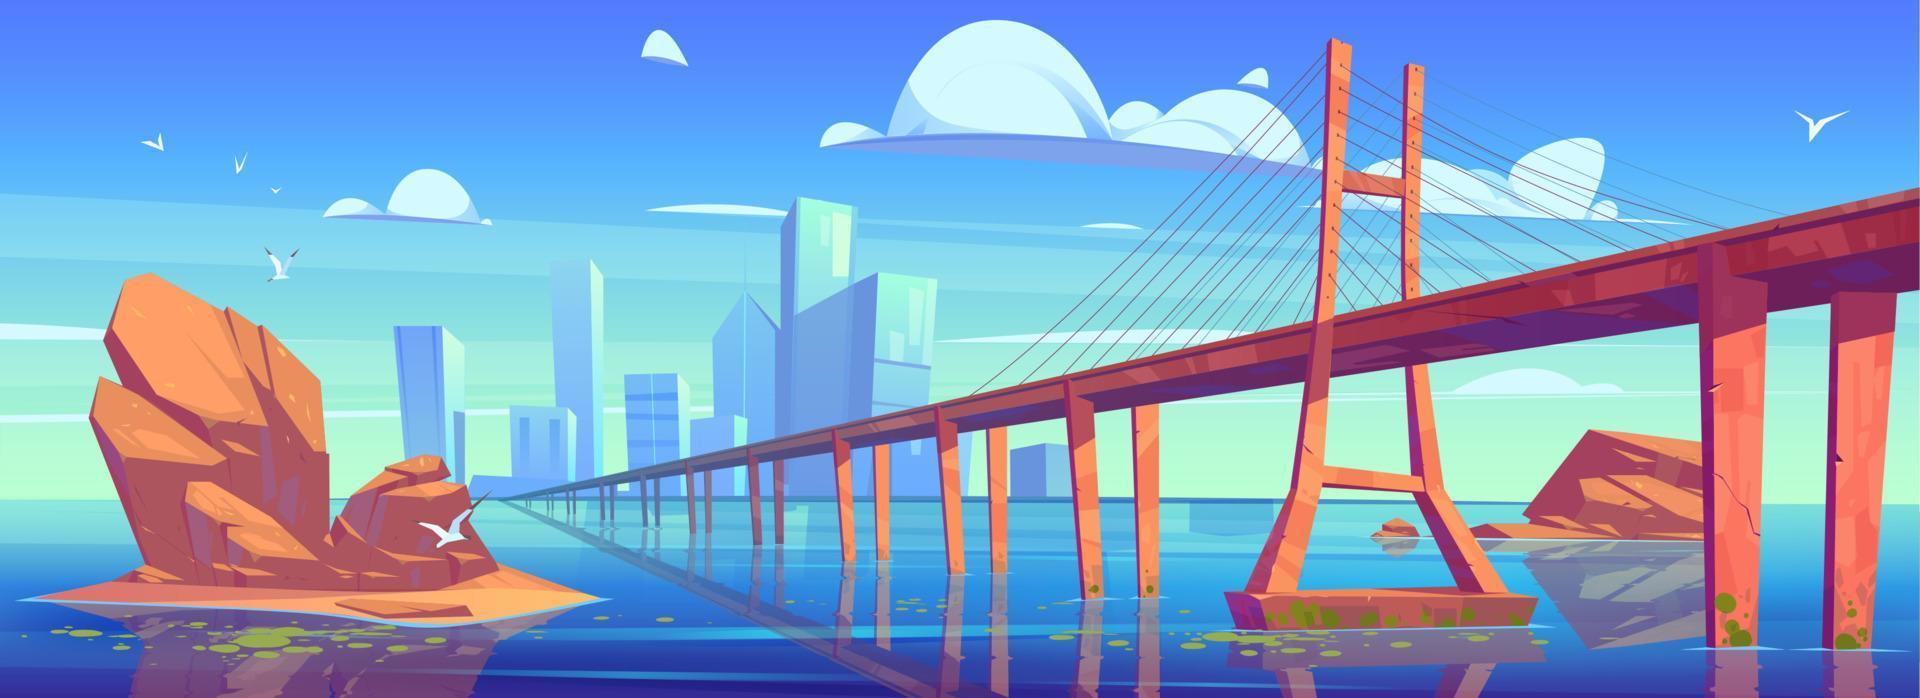 vista del horizonte de la ciudad moderna con puente de agua baja vector